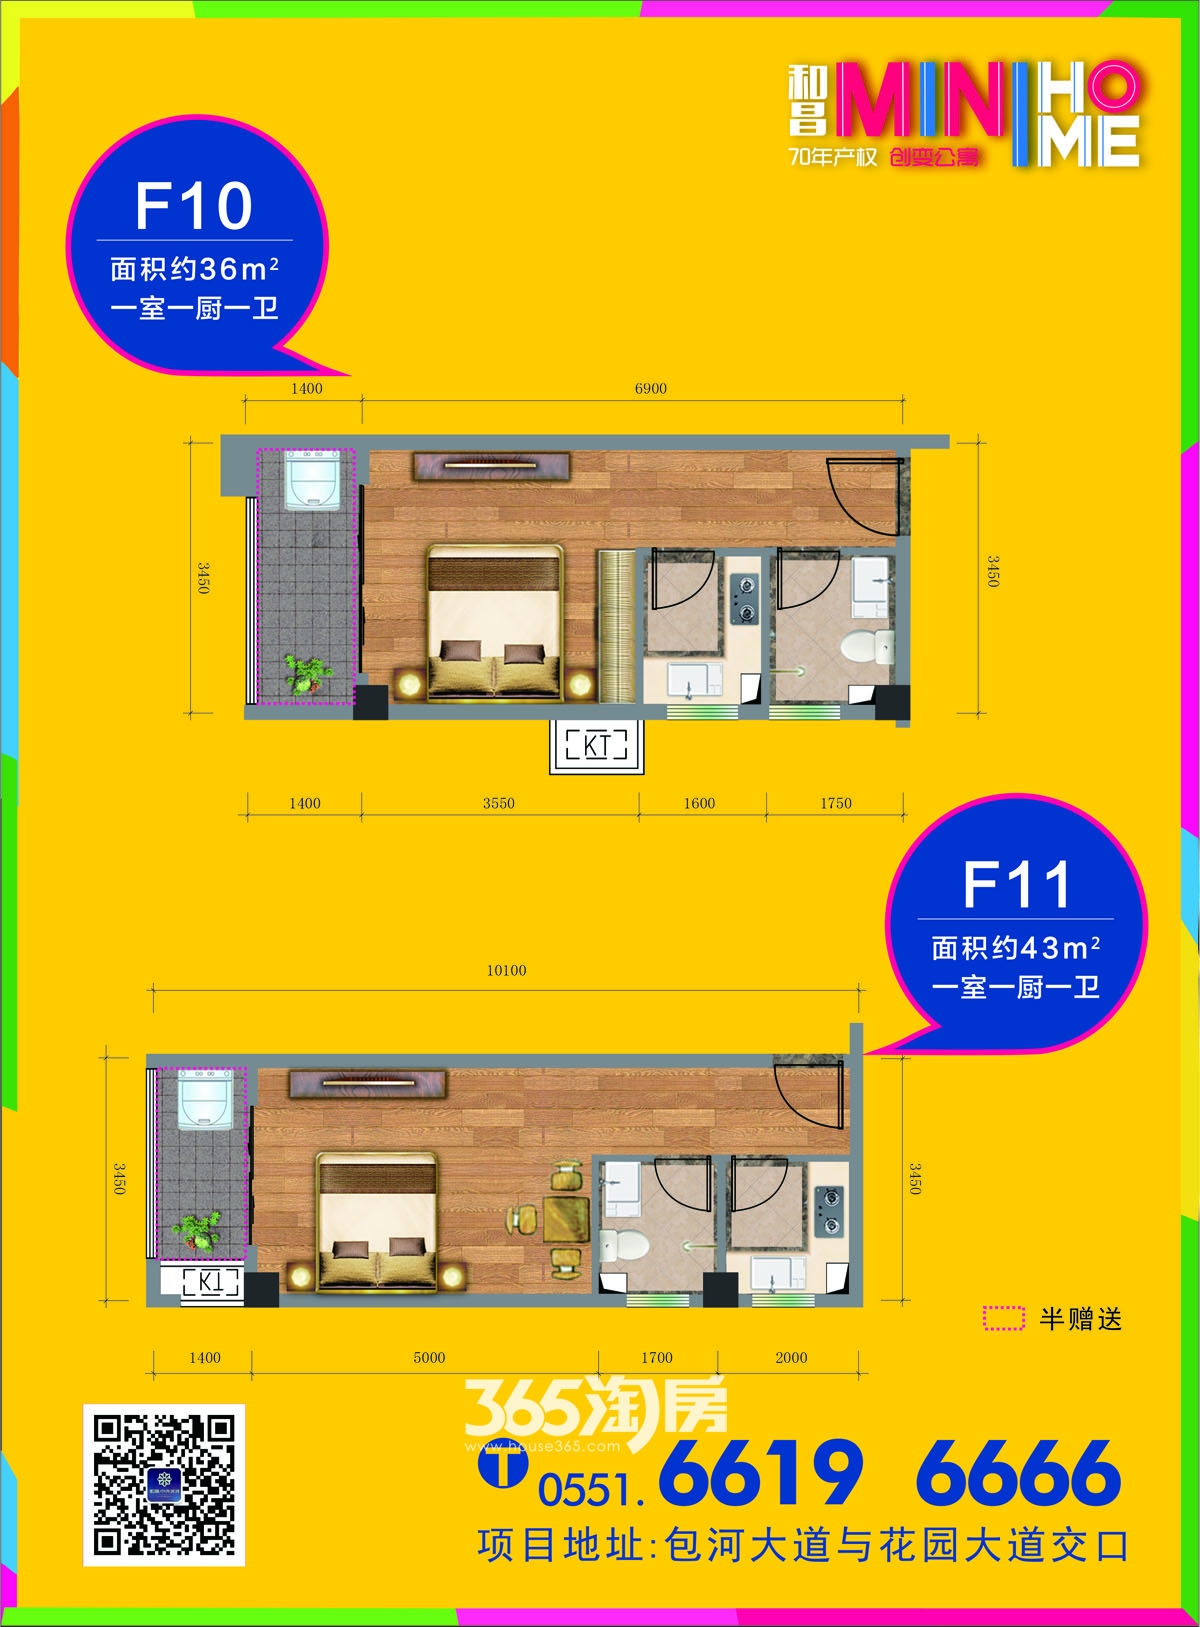 和昌mini home公寓F10、F11户型图